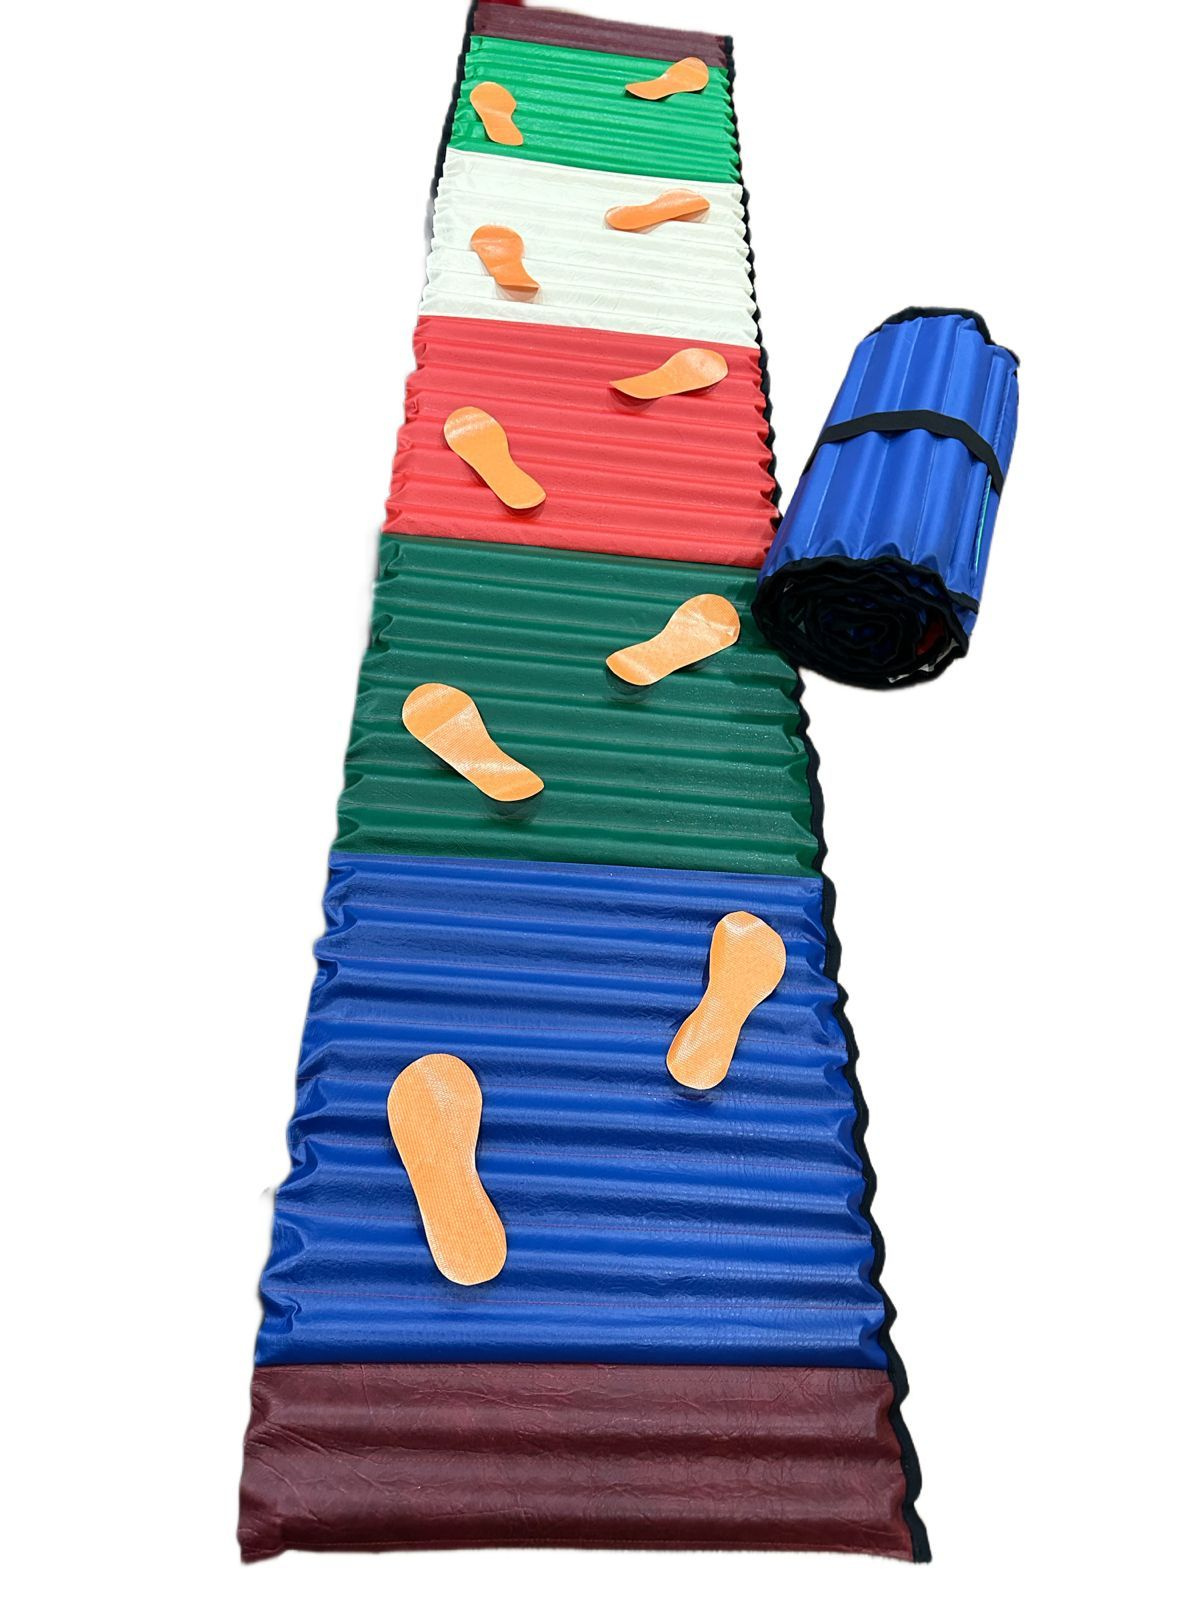 Массажный коврик-дорожка-роллер незаменимый аксессуар для спортивно-оздоровительных занятий с детьми и взрослым населением. 